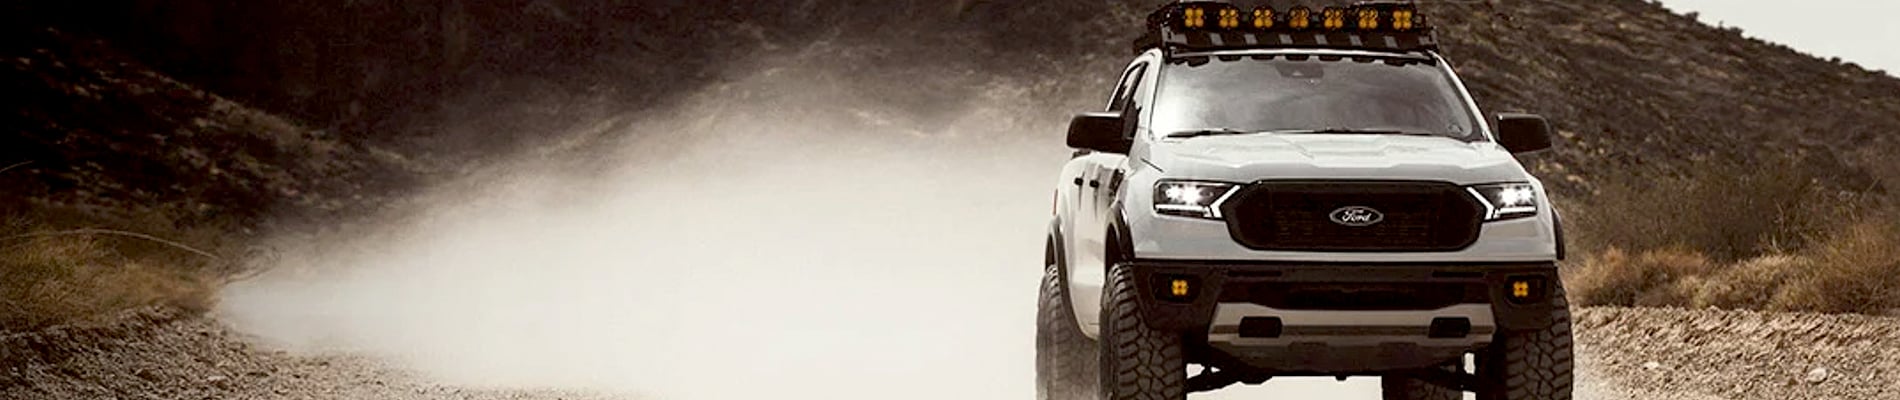 Ford Ranger Accessories, Aftermarket Parts, Mods & Upgrades - AutoAccessoriesGarage.com